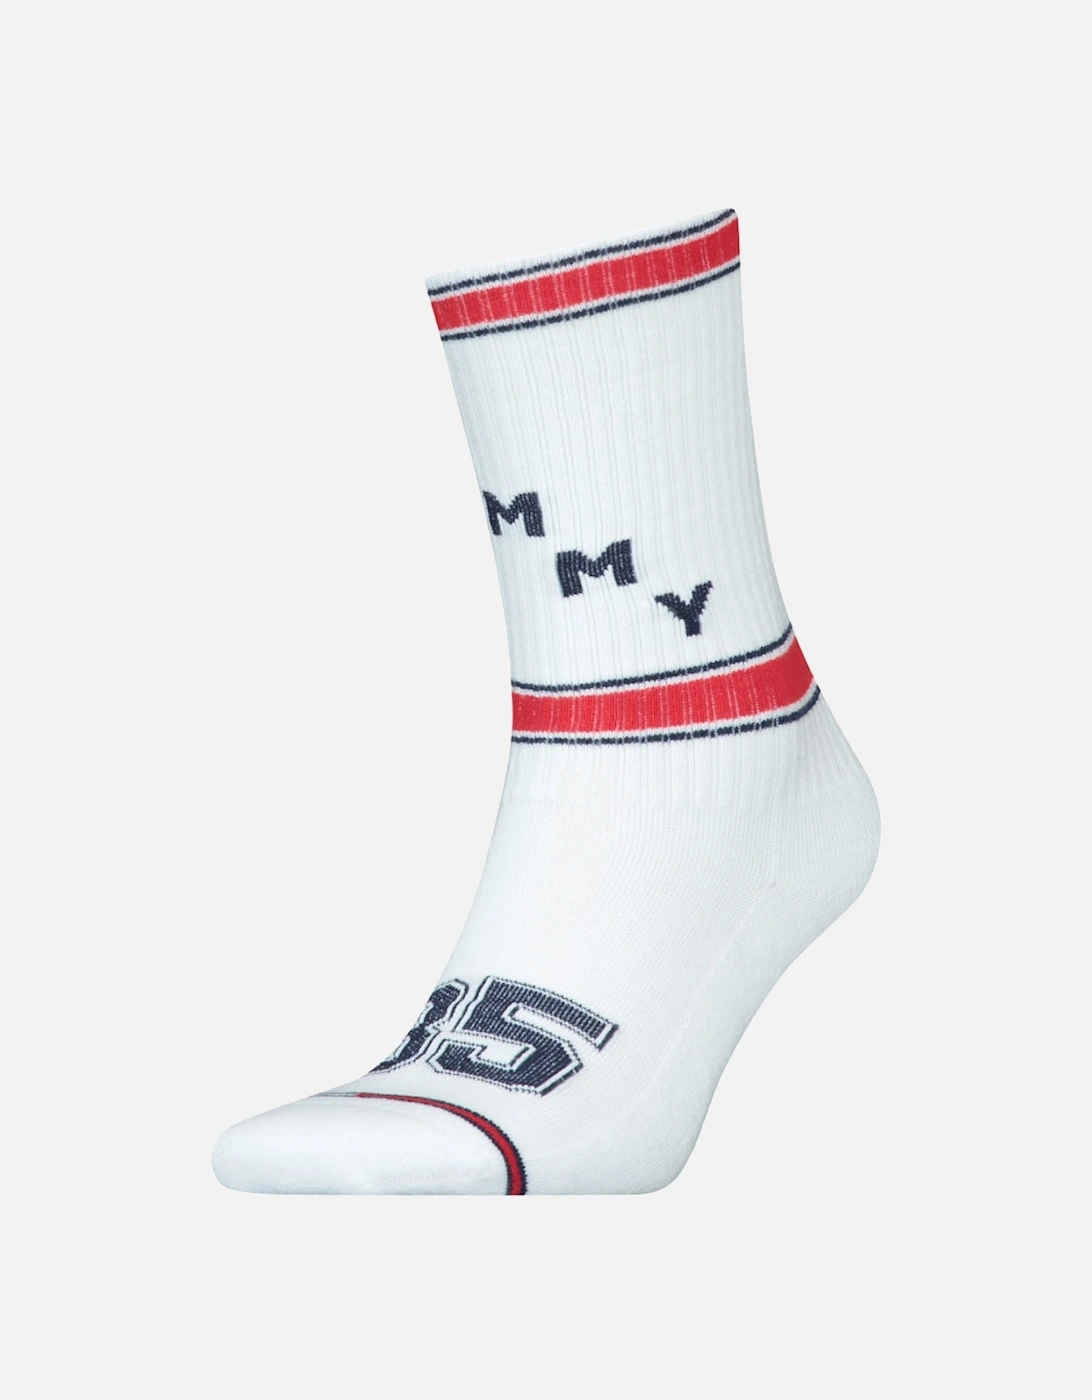 Men's Varsity Sock, 2 of 1